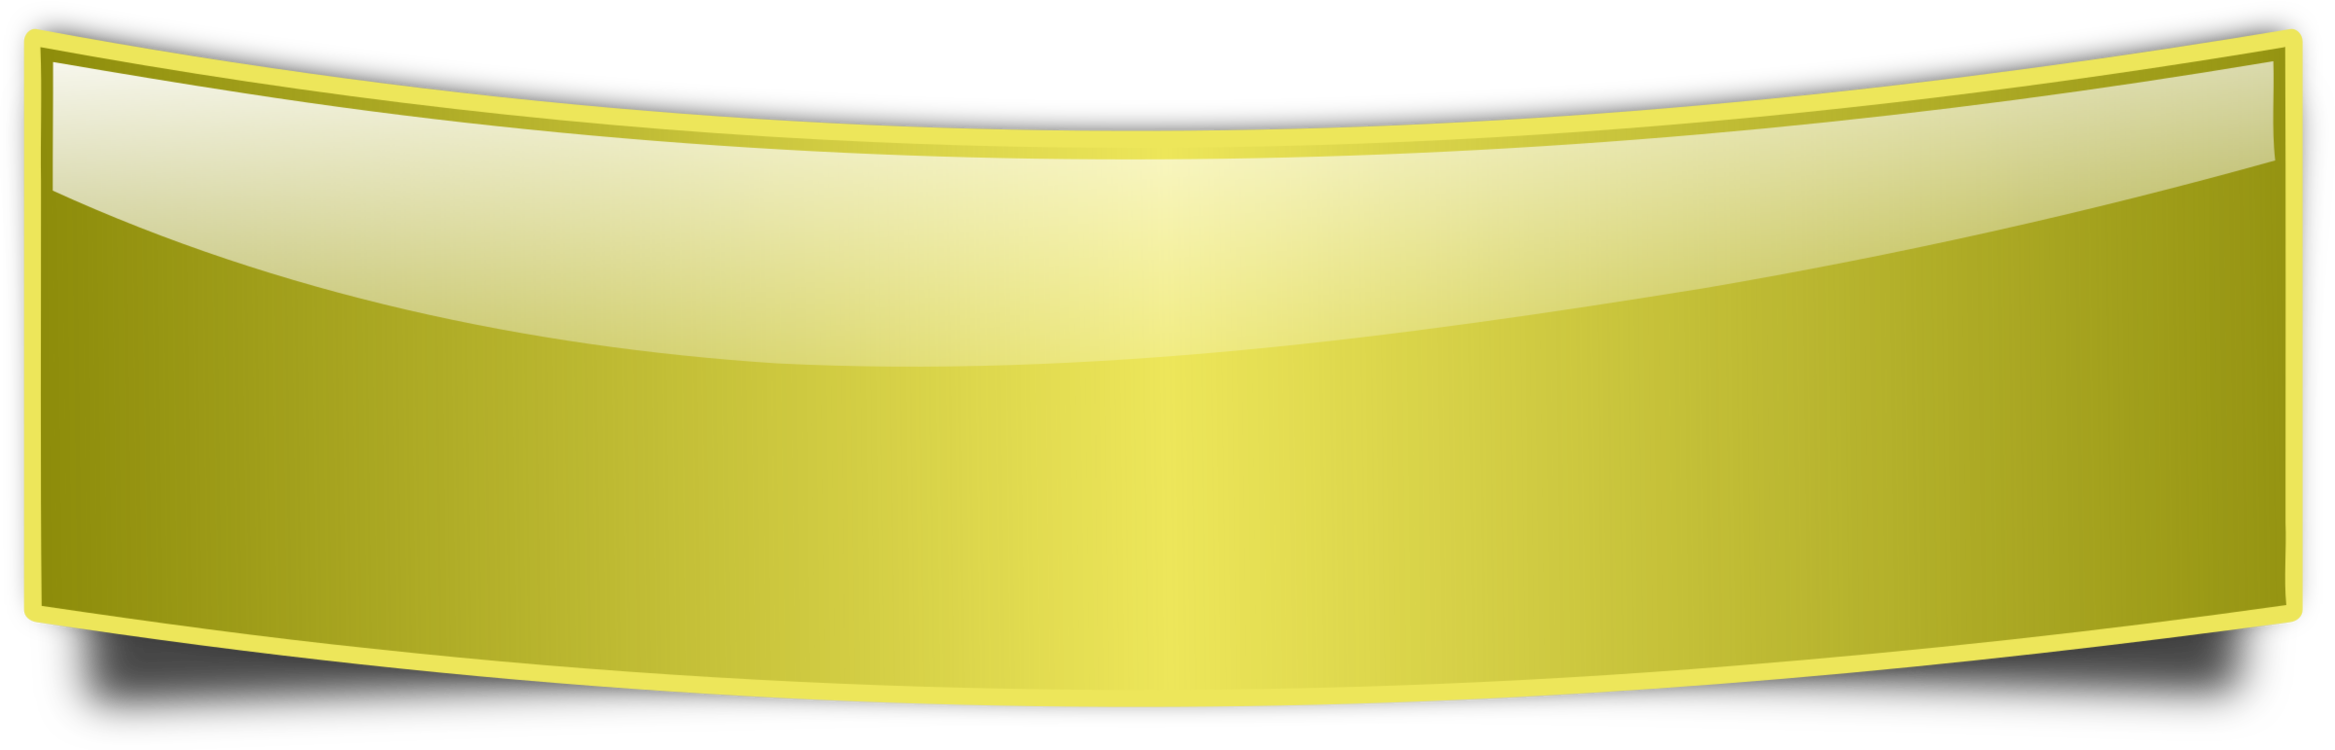 Angle,Yellow,Computer Wallpaper